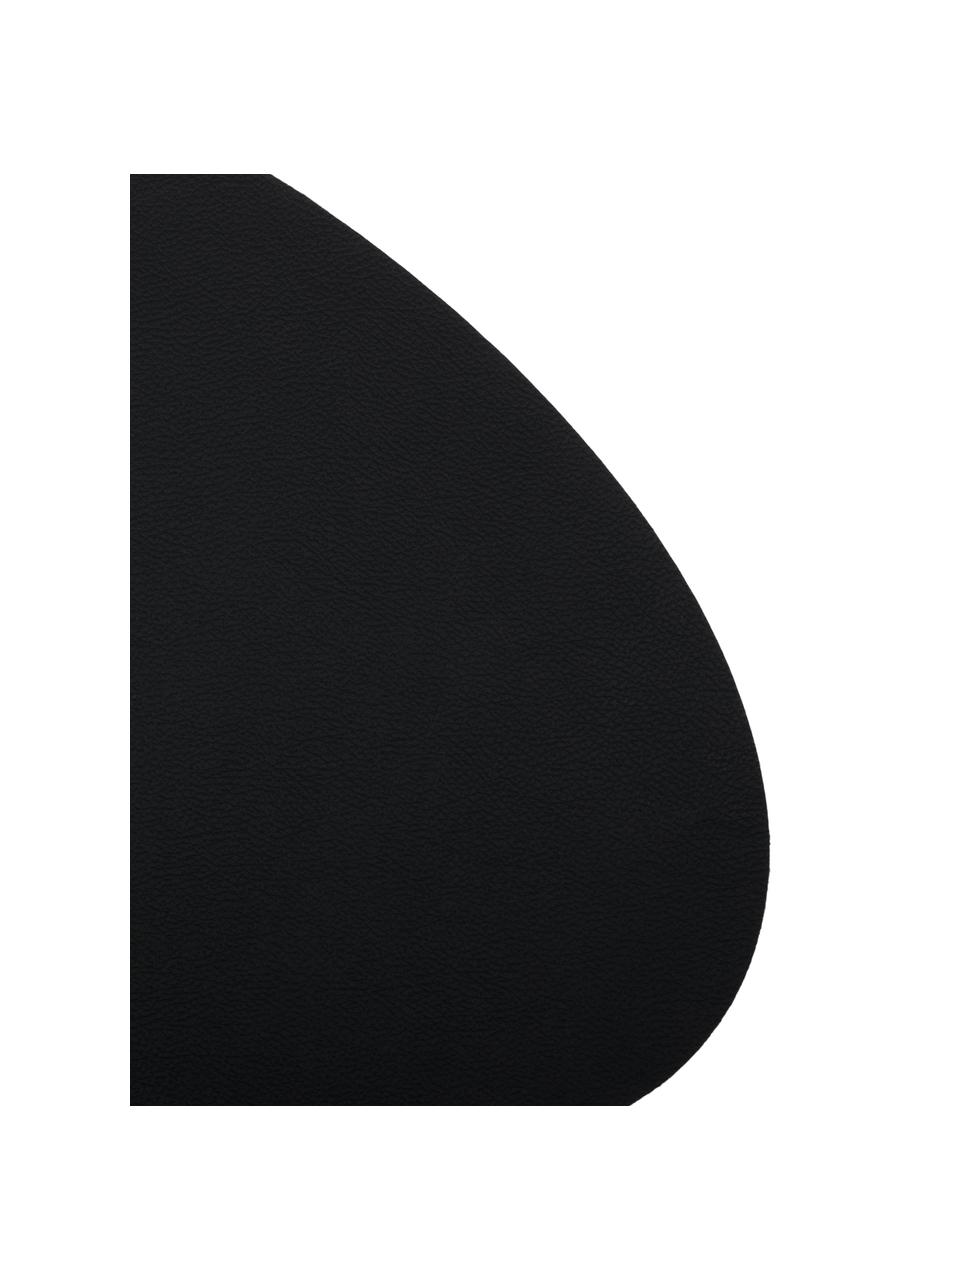 Ovale Kunstleder-Tischsets Leni, 2 Stück, Kunstleder, Schwarz, B 33 x L 40 cm